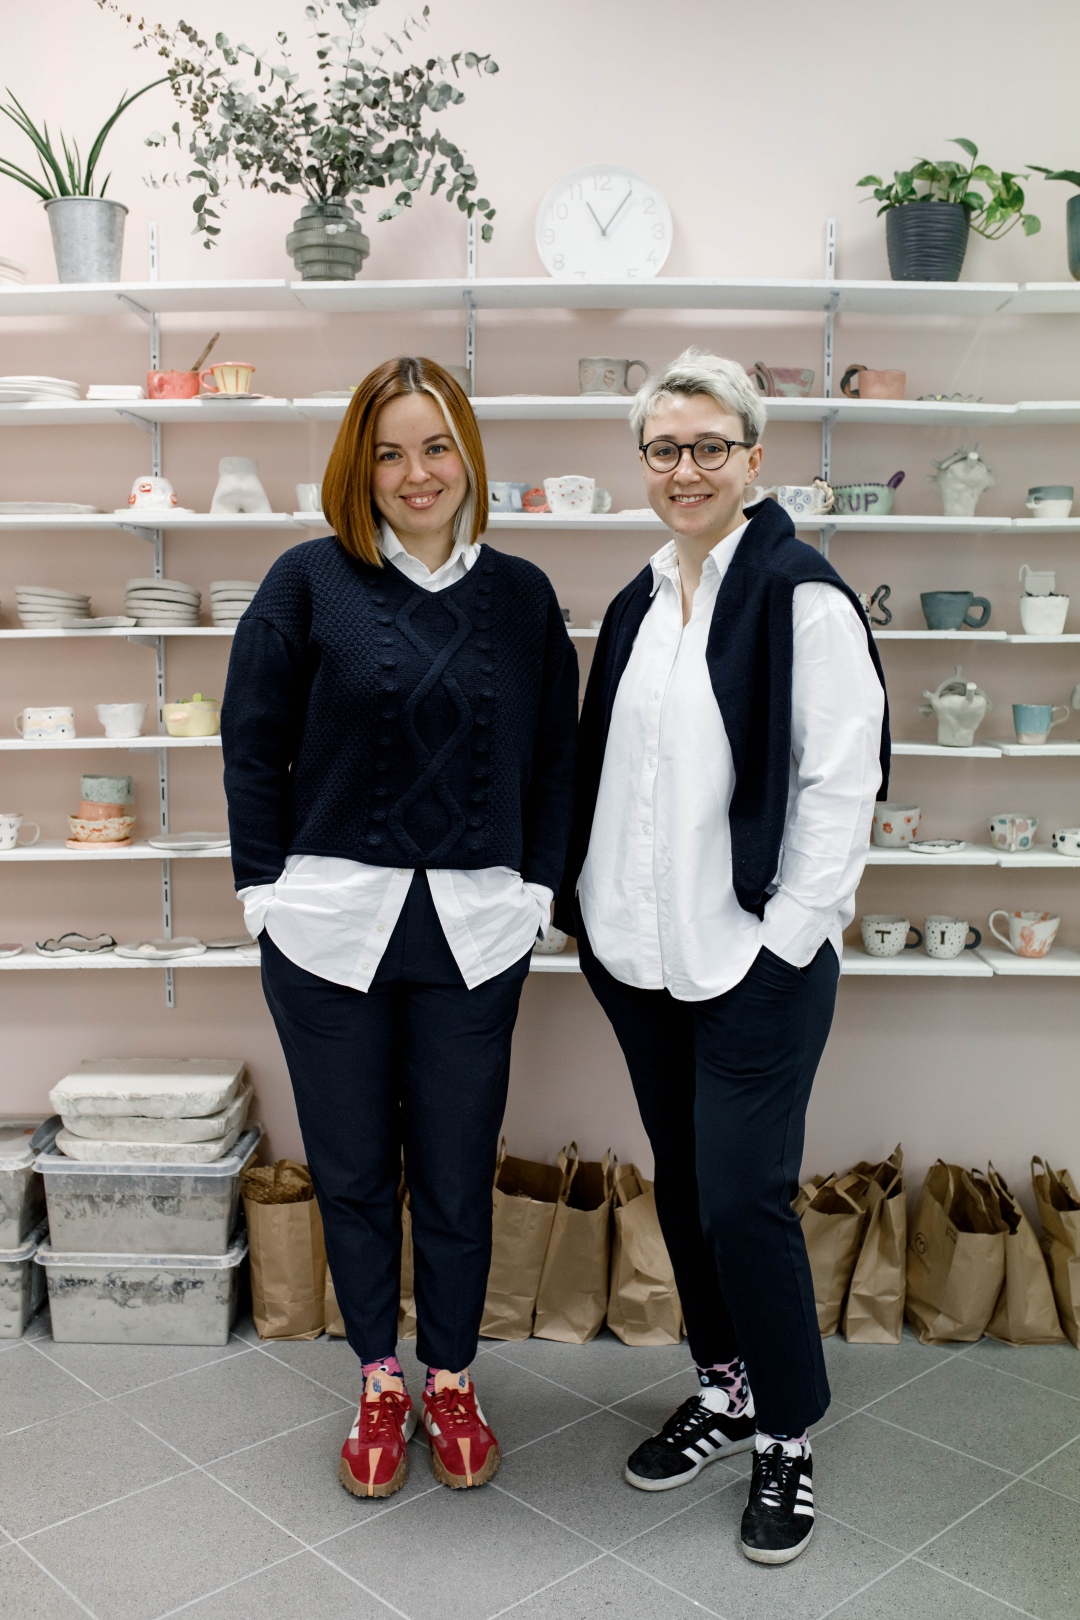 Posjetili smo Morra Ceramics studio koji vode dvije Ukrajinke spremne da razbiju sve tabue vezane za žene